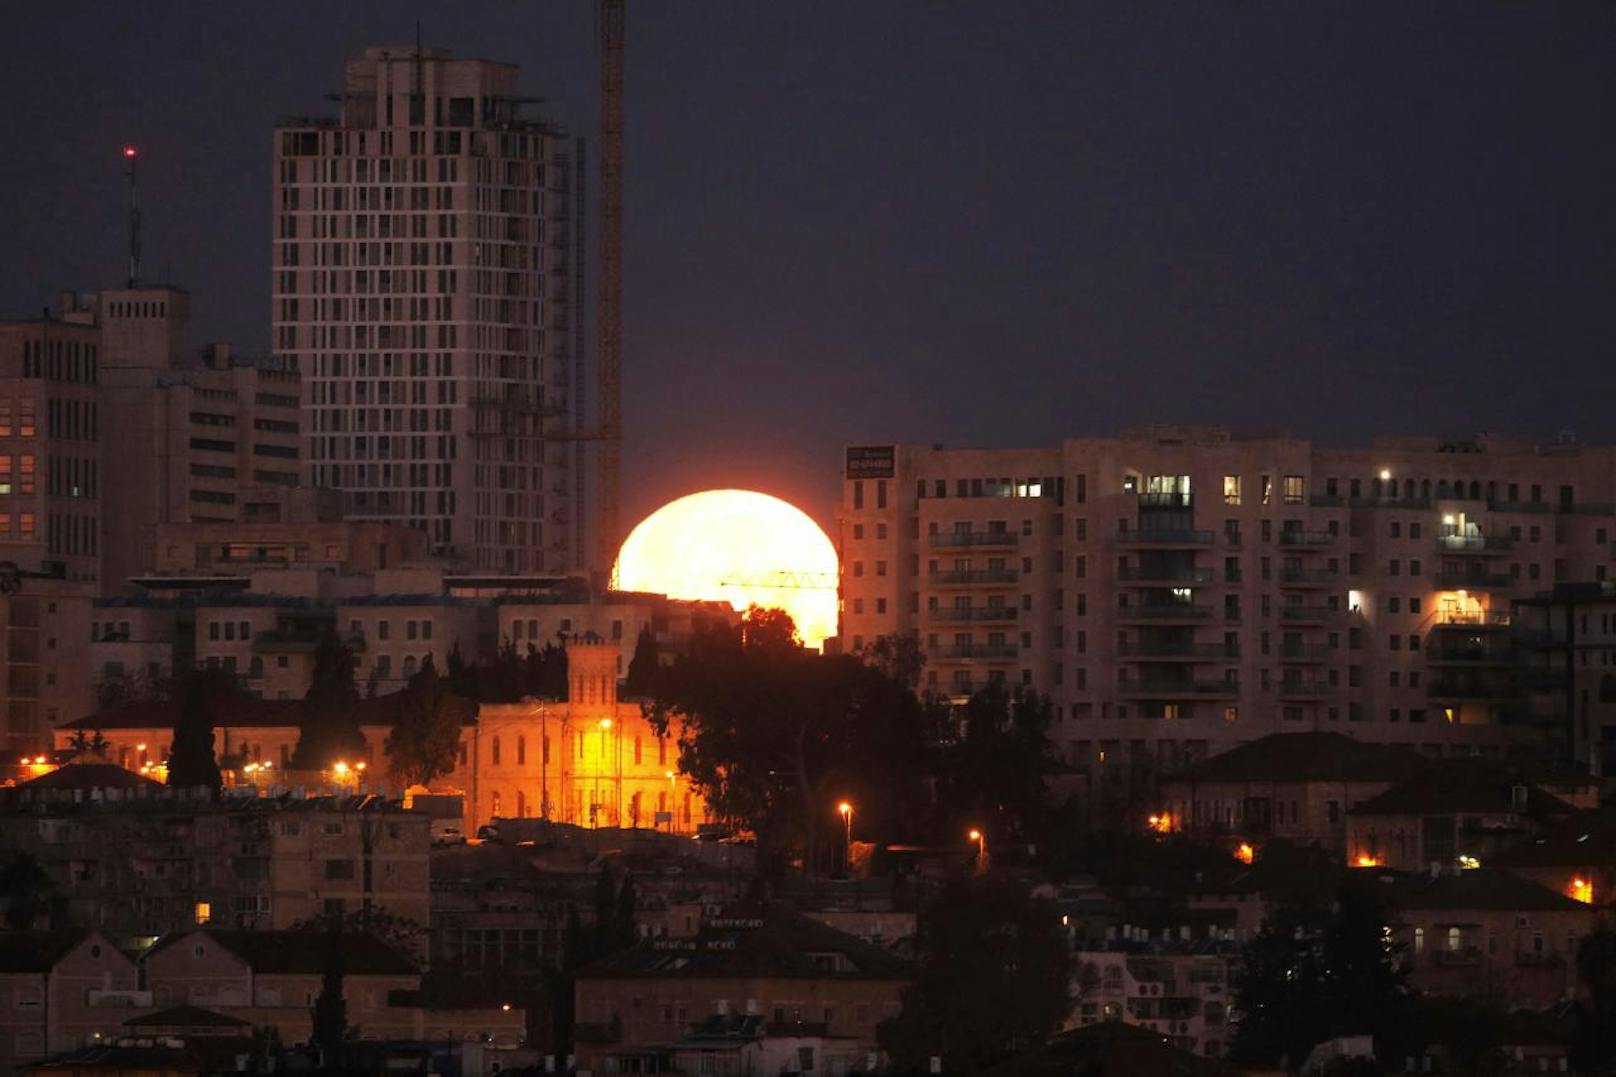 Nein, das ist nicht die aufgehende Sonne: Das ist der Mond, wie er heute vor der Skyline von Jerusalem unterging. Der seltene "Super-Blau-Blutmond" wird am Nachmittag in Teilen von Nordamerika, Asien, dem mitlleren Osten, Russland und Australien zu sehen sein.